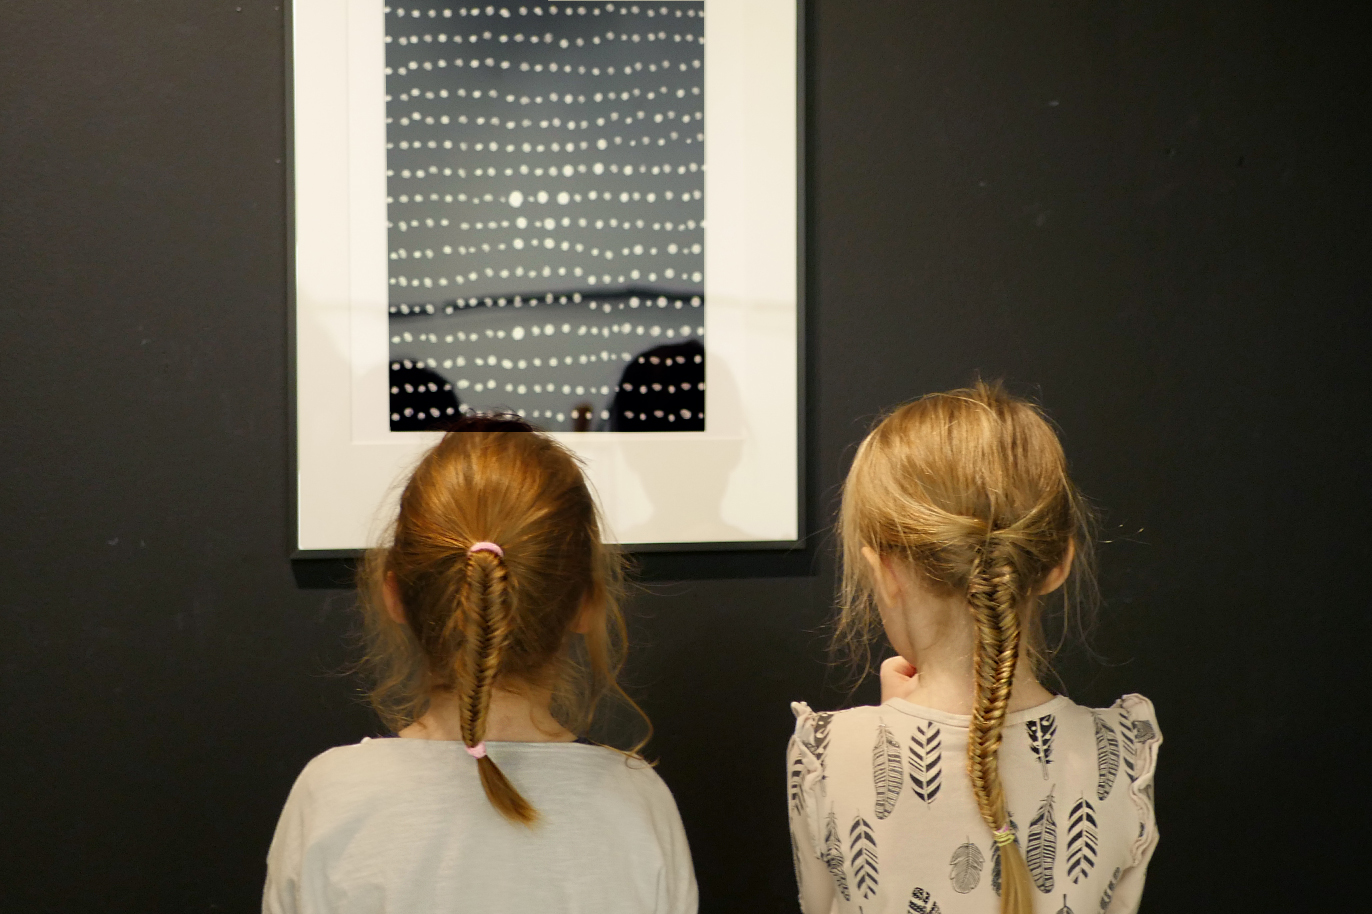 Två blonda flickor med flätor står och tittar på en grafik med vita prickar på svart botten.